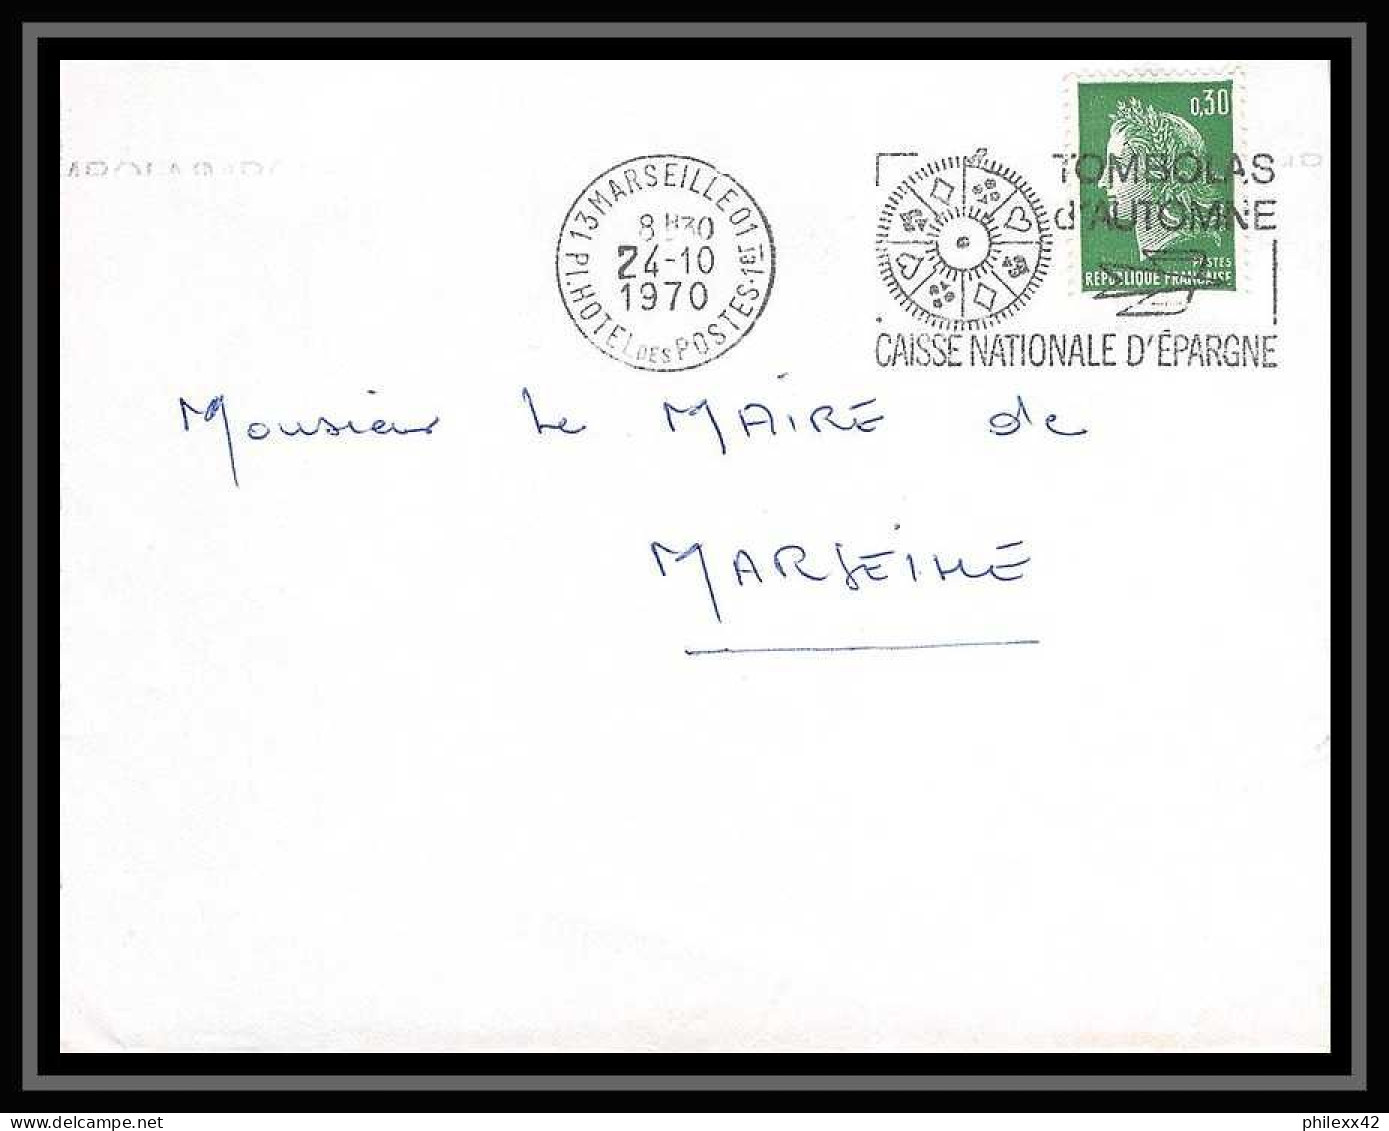 116336 lot de 14 Lettres cover Bouches du rhone flammes diverses Marseille Hotel des postes